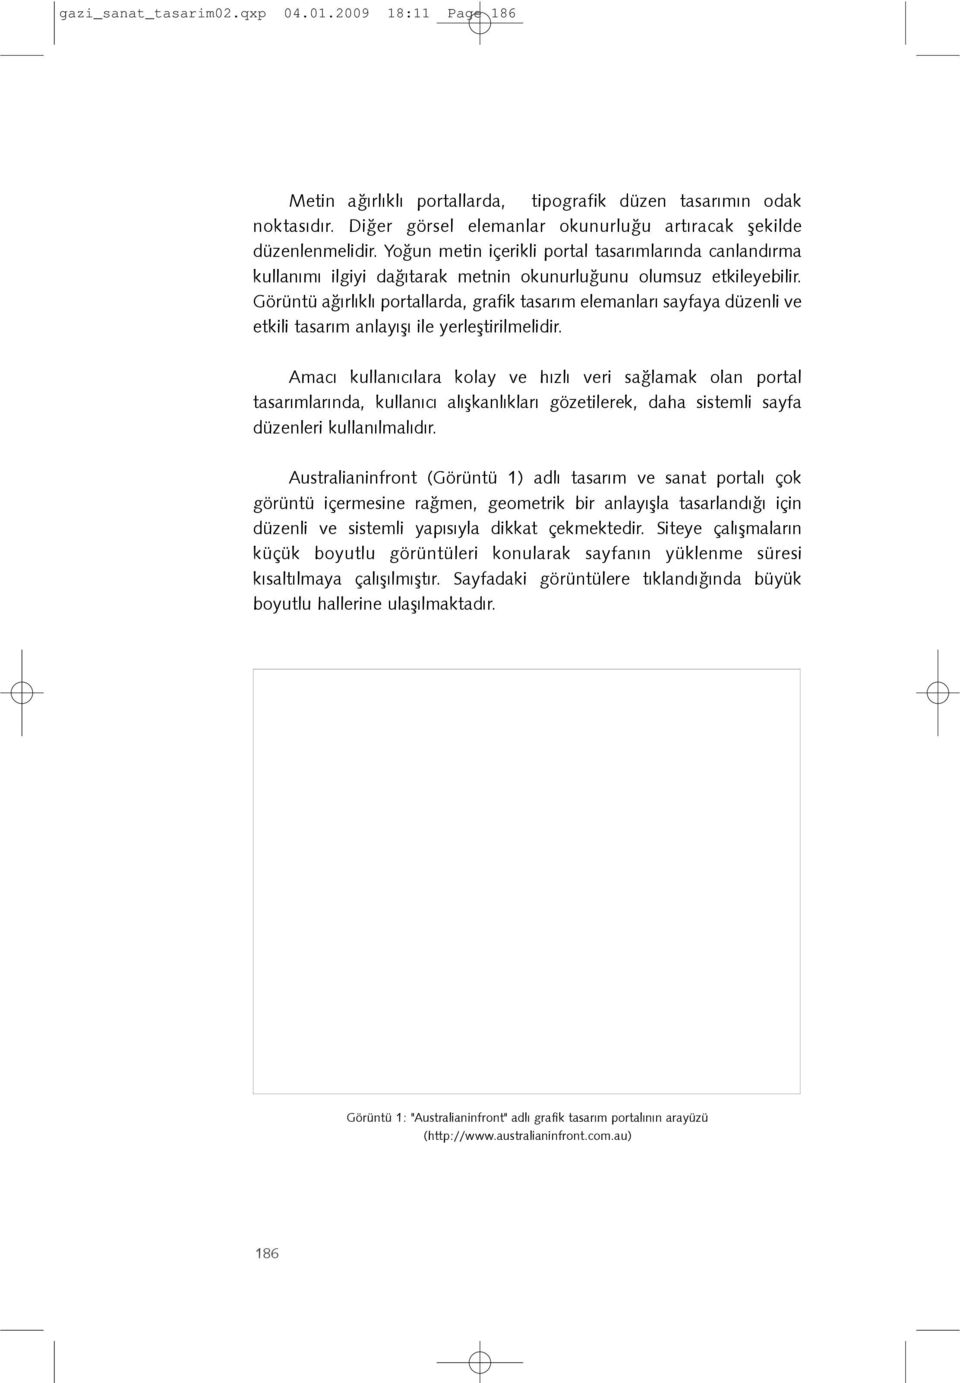 Görüntü aðýrlýklý portallarda, grafik tasarým elemanlarý sayfaya düzenli ve etkili tasarým anlayýþý ile yerleþtirilmelidir.